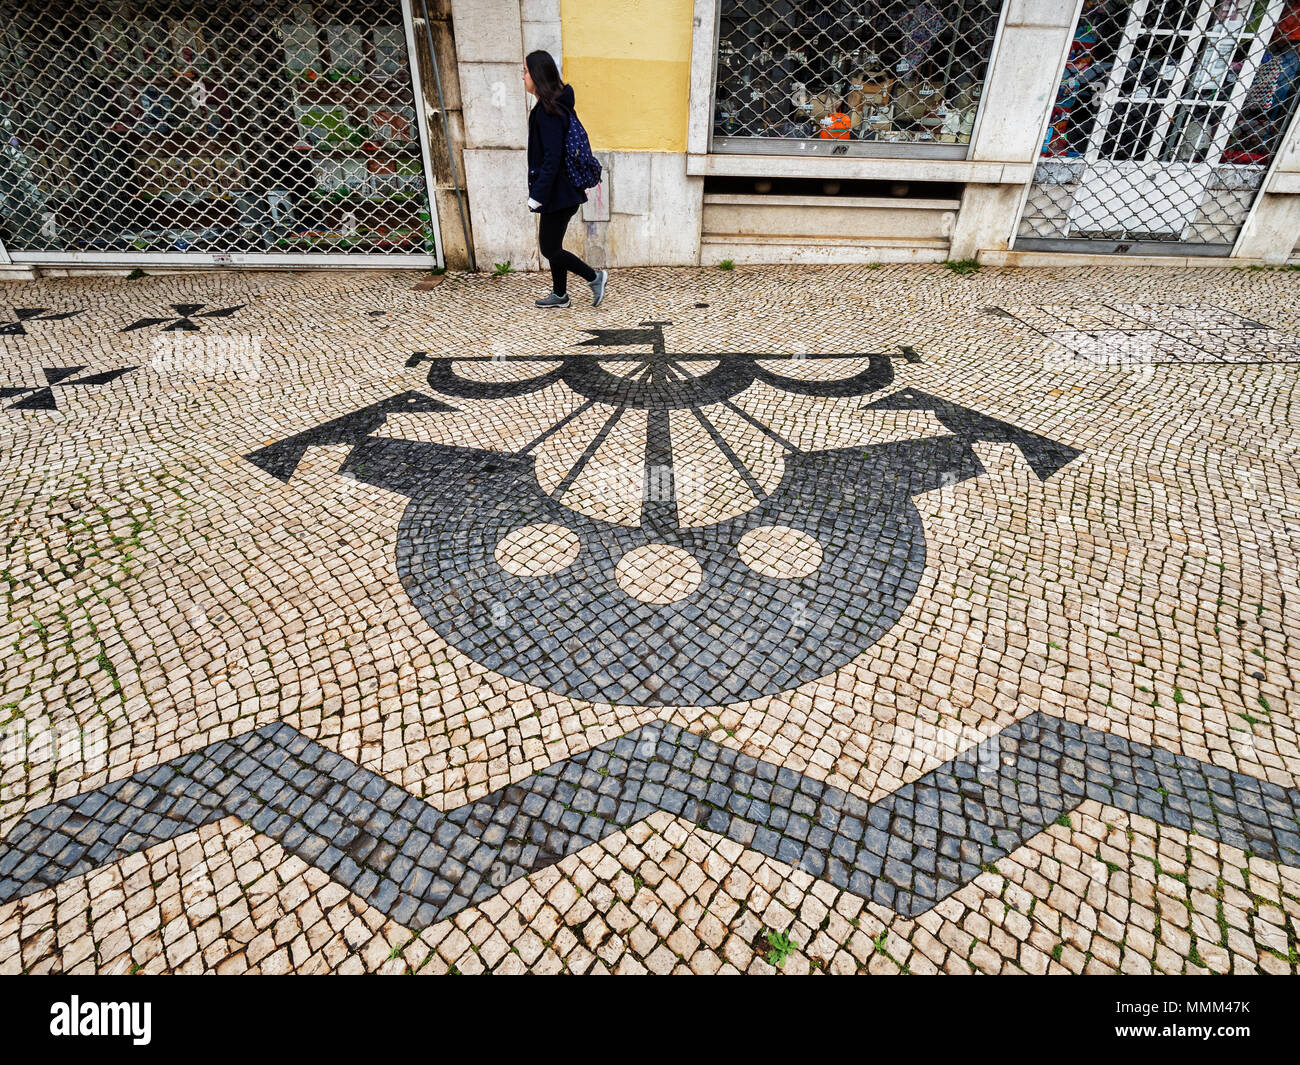 27. Februar 2018: Lissabon, Portugal - Traditionelle portugiesische Bürgersteig, oder calcada Portugiesisch, die Fliesen- Pflaster in öffentlichen Bereichen von Portugal gefunden, ihr Stockfoto